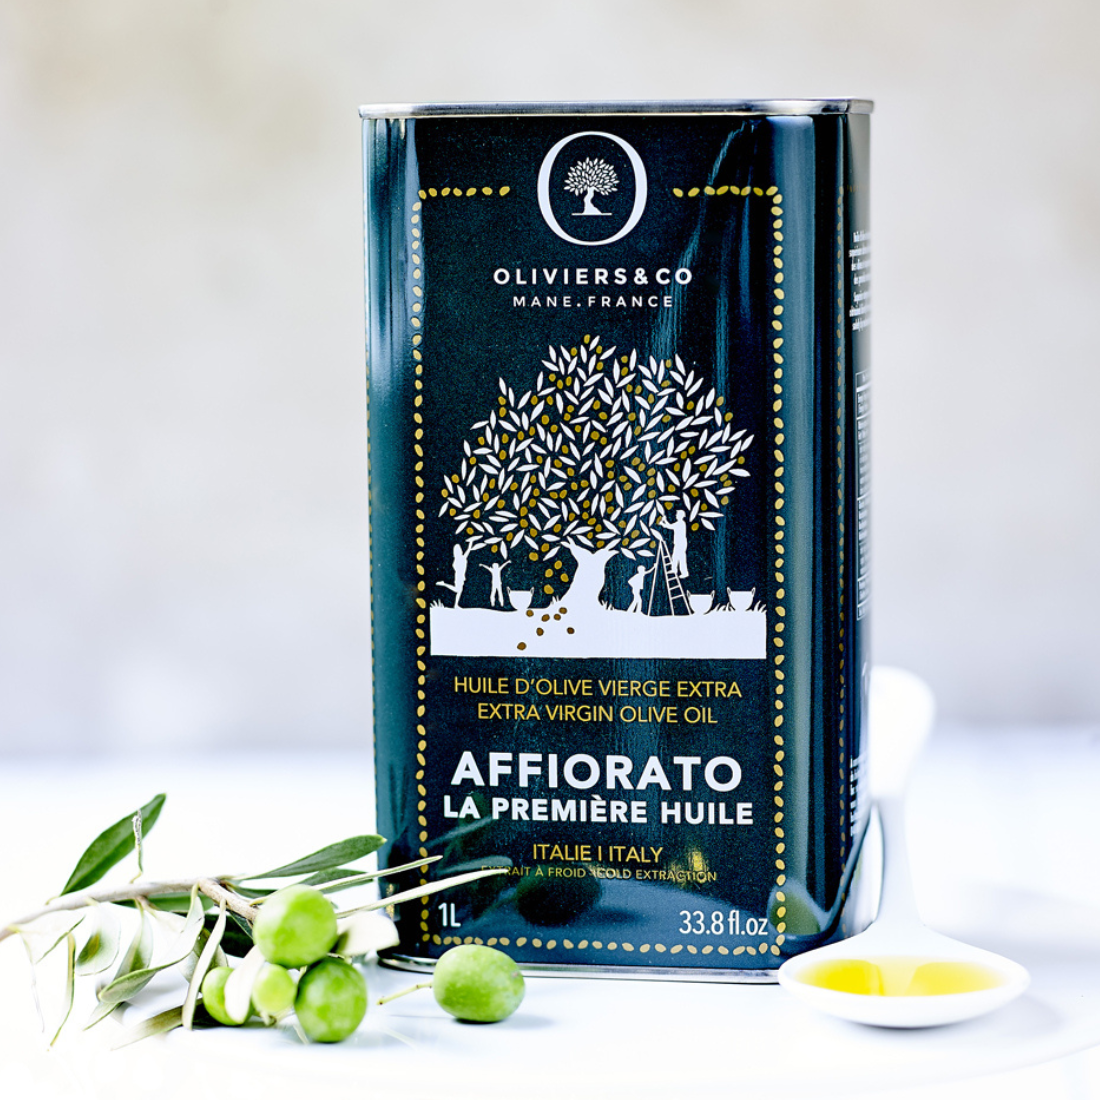 POUCE Huile d'olive vierge extra 1l pas cher 